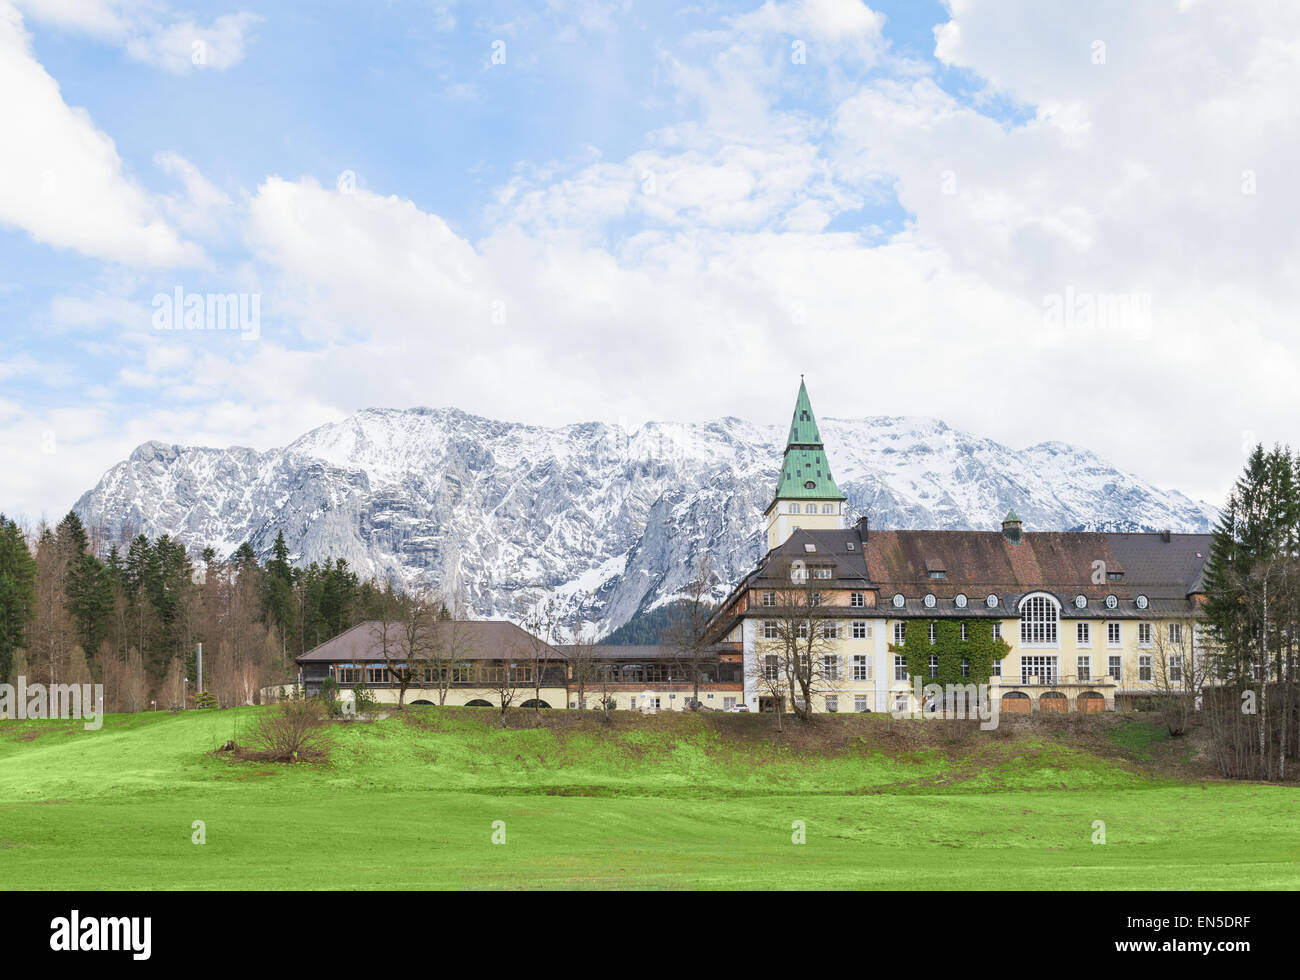 Hotel Schloss Elmau en el valle de los Alpes bávaros, será el sitio de la cumbre del G7 en 2015. El G7 ha elegido a lugares alejados de sus reuniones anuales durante los últimos años por razones de seguridad. Foto de stock